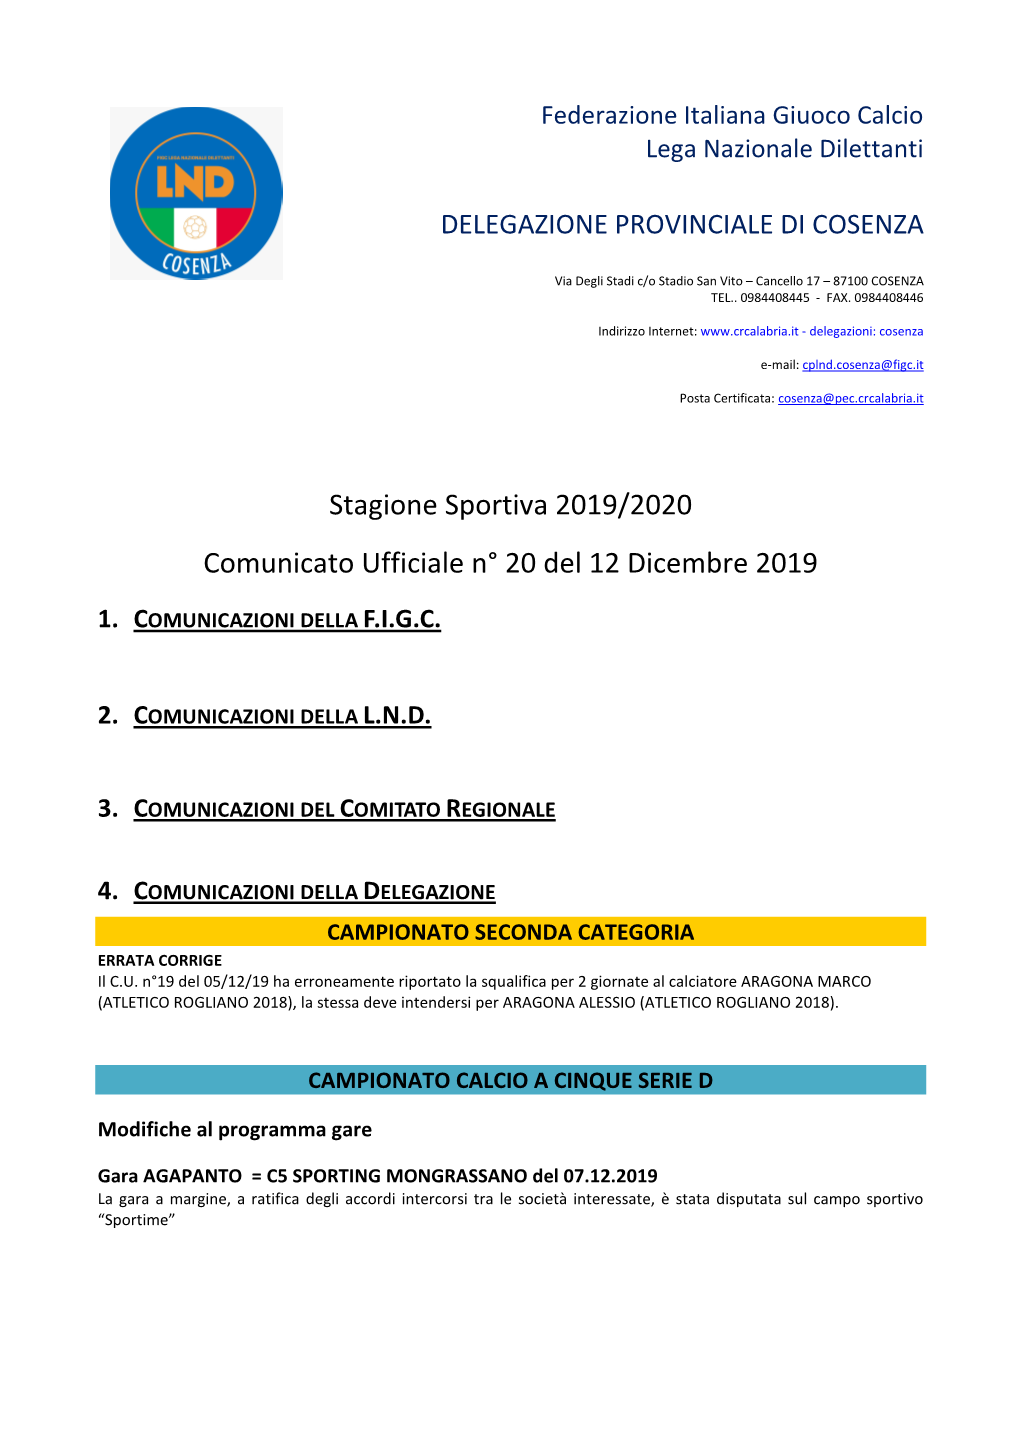 Stagione Sportiva 2019/2020 Comunicato Ufficiale N° 20 Del 12 Dicembre 2019